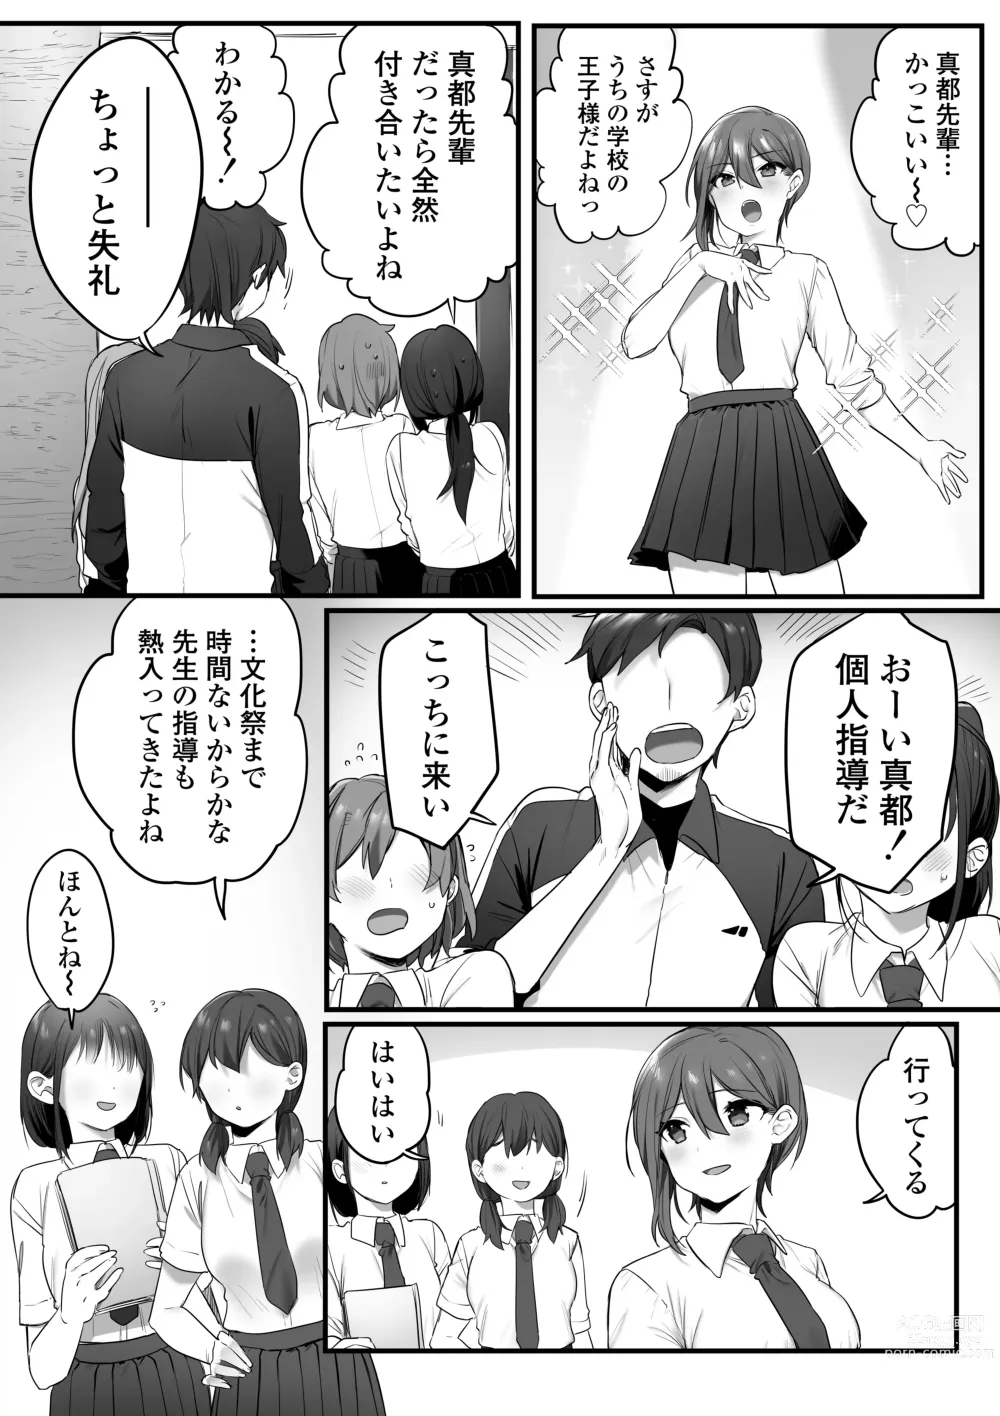 Page 3 of doujinshi Engekibu no Ouji-sama